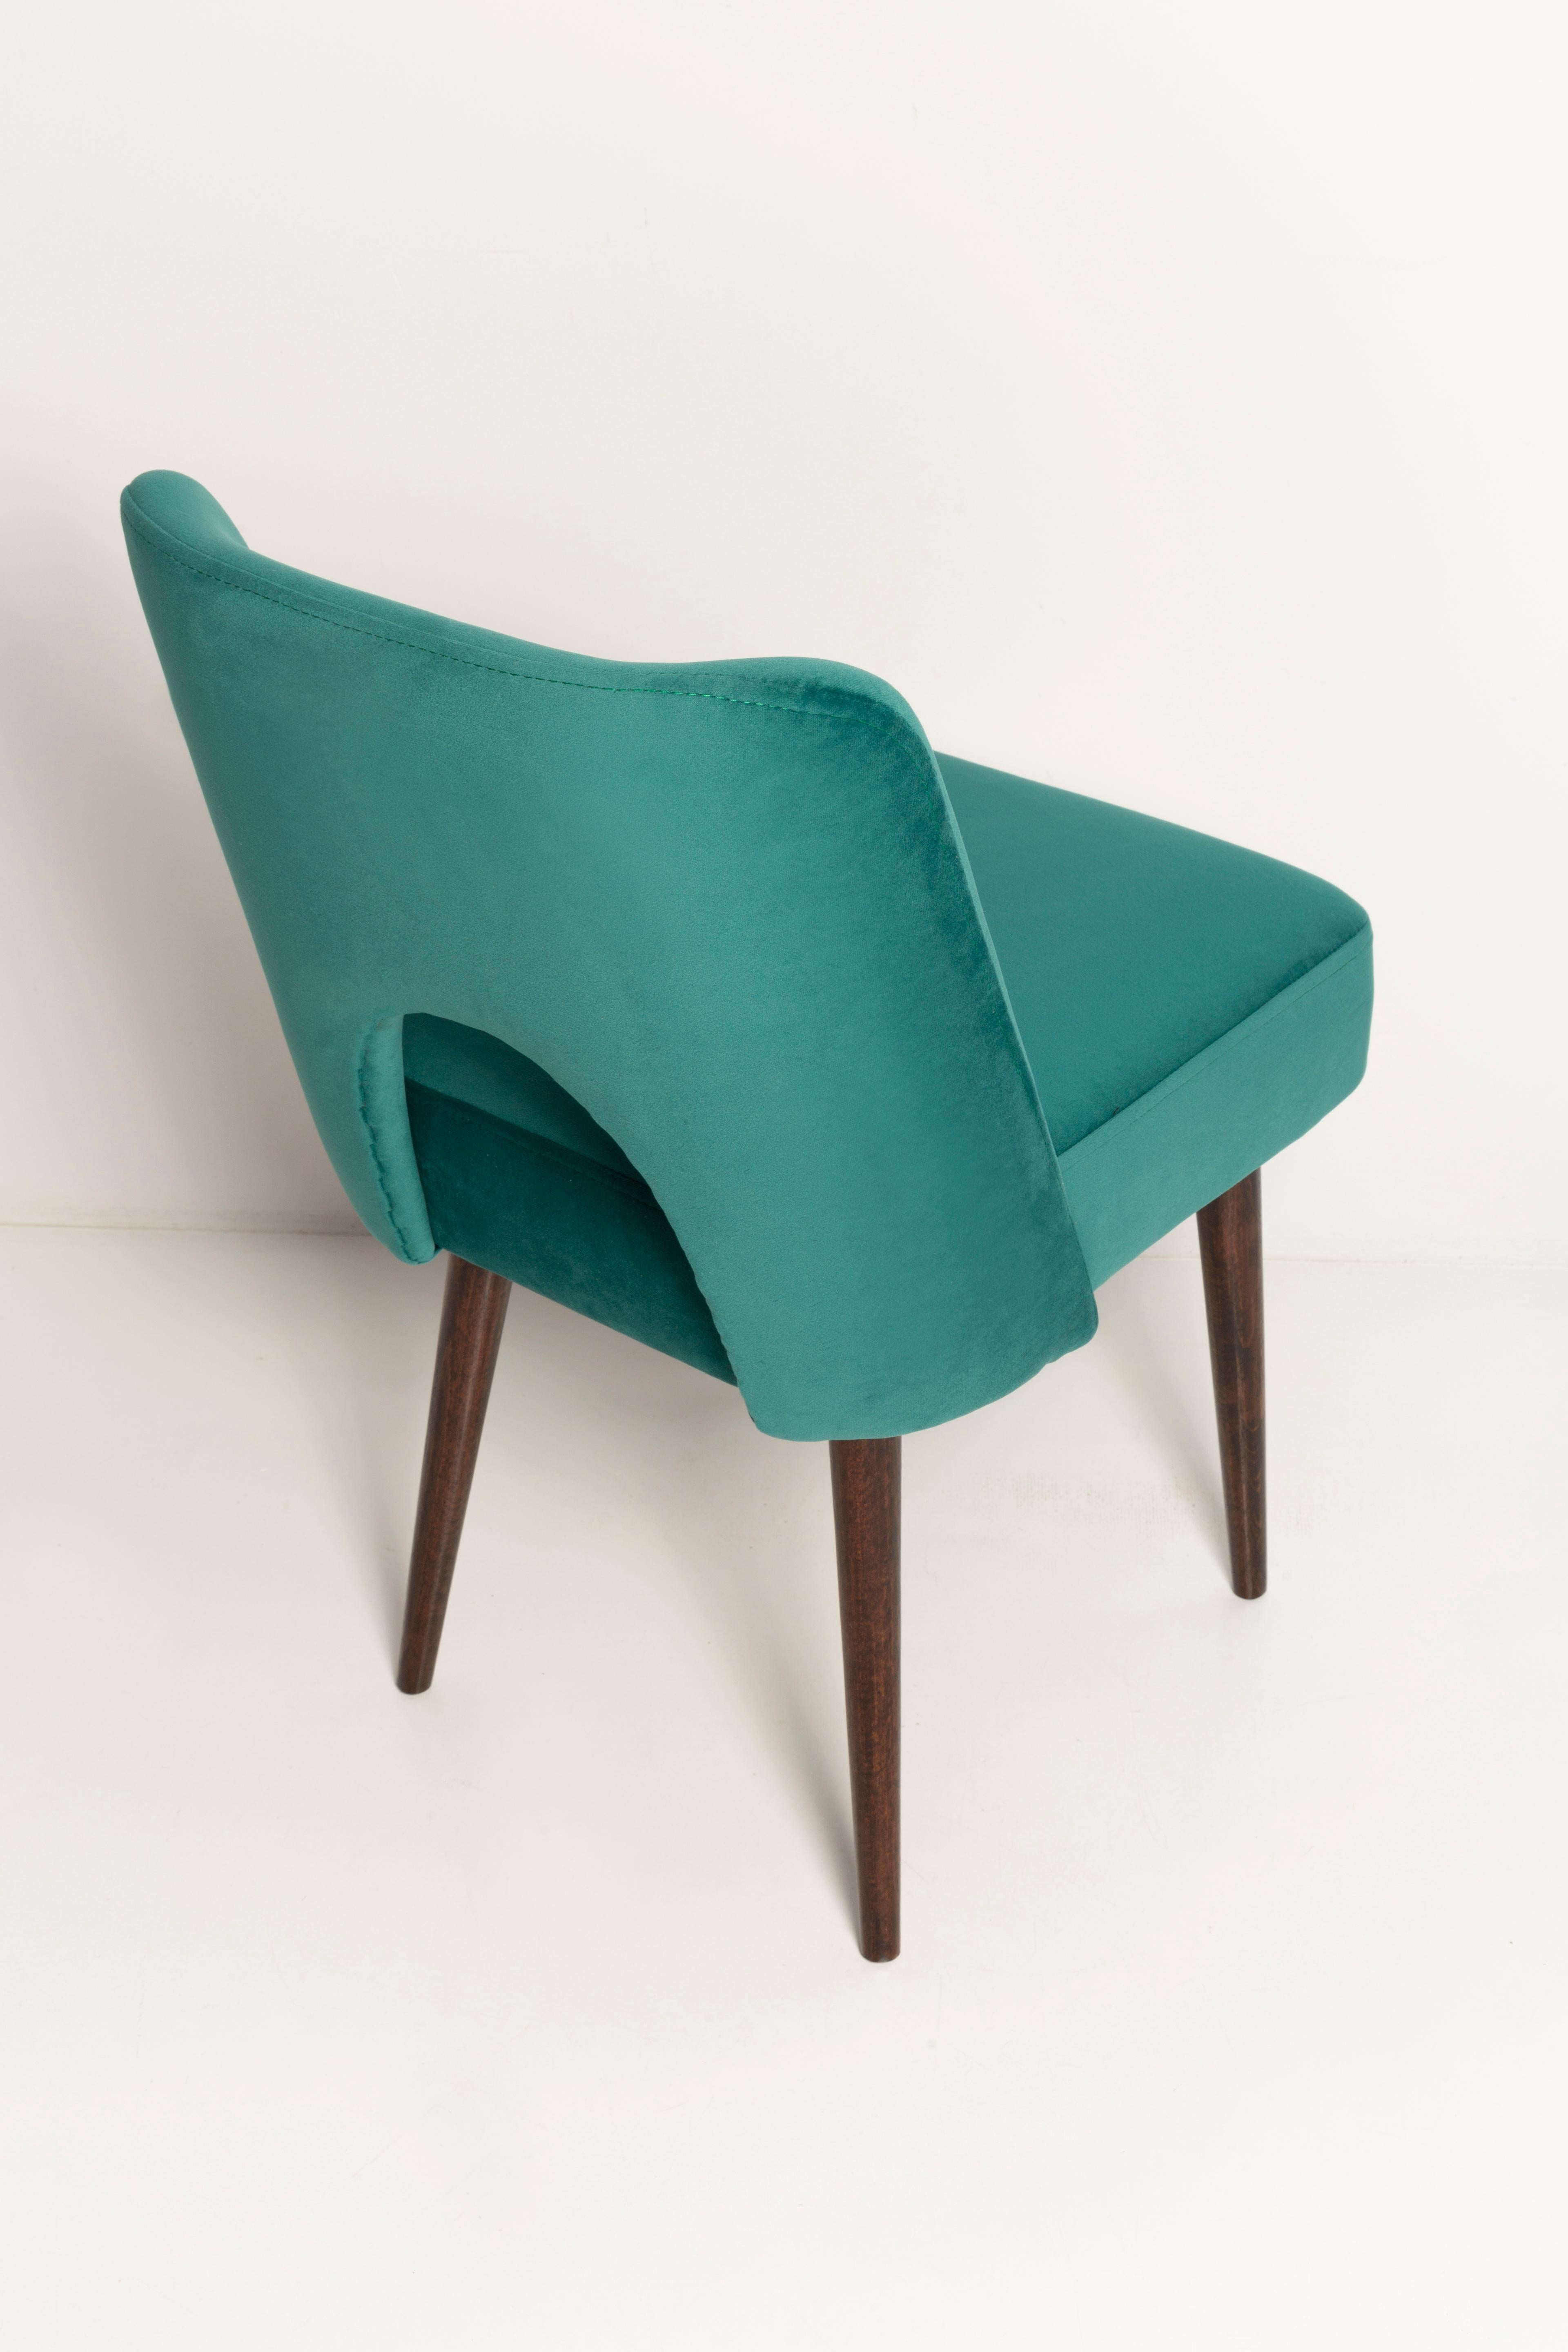 Seven Velvet 'Shell' Chairs, Dark Green Velvet, Dark Beech Wood, Europe, 1960s For Sale 5